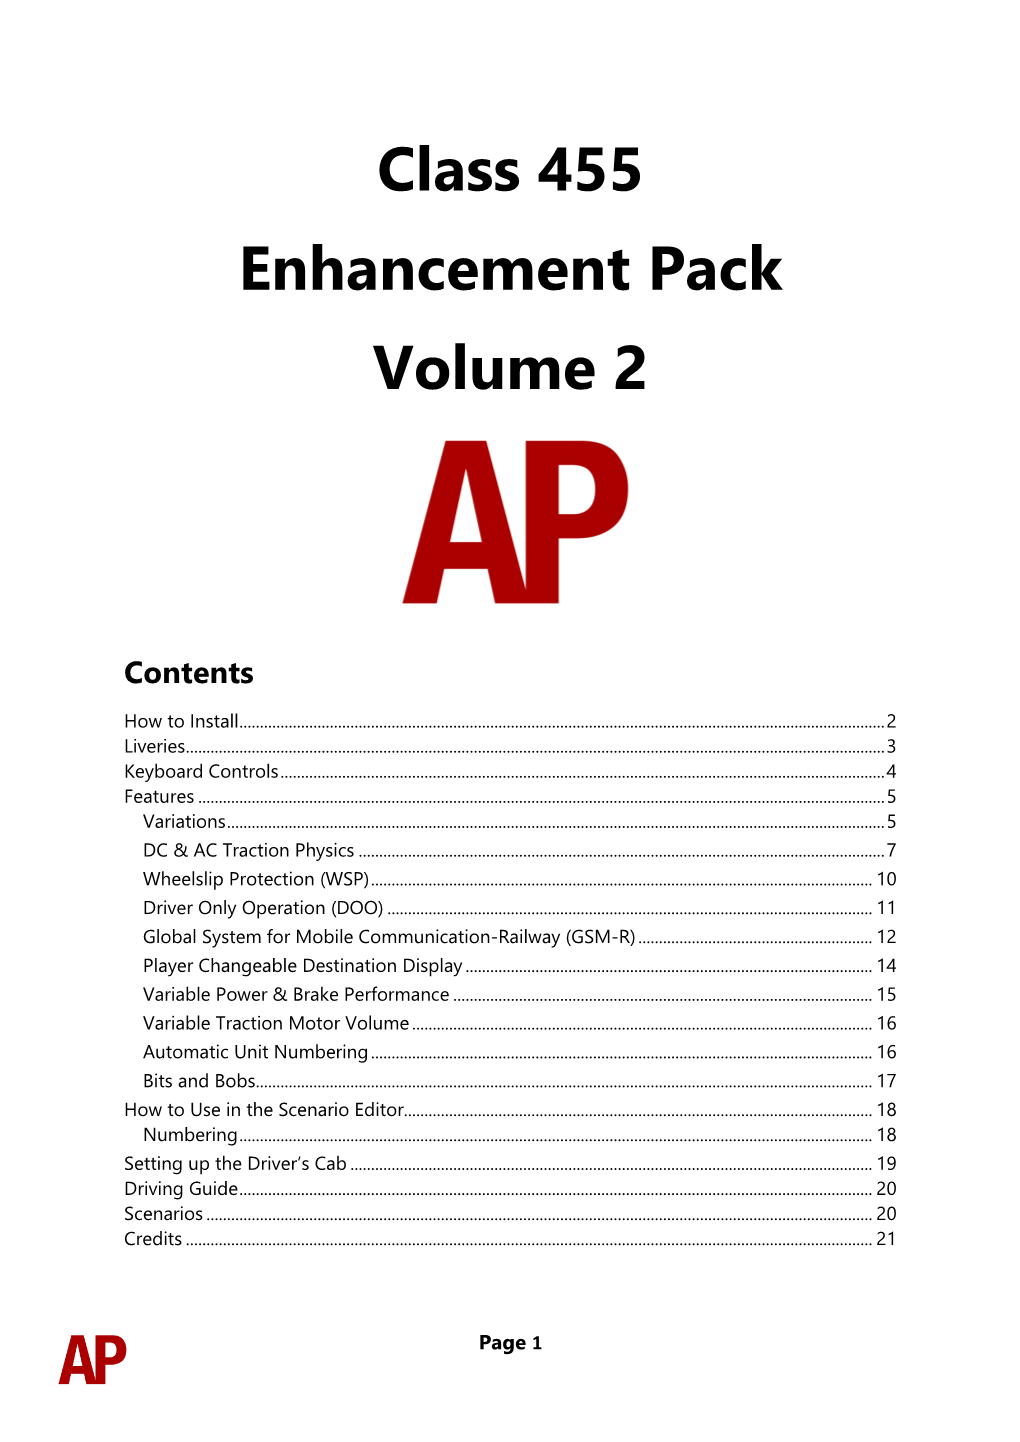 Class 455 Enhancement Pack Volume 2